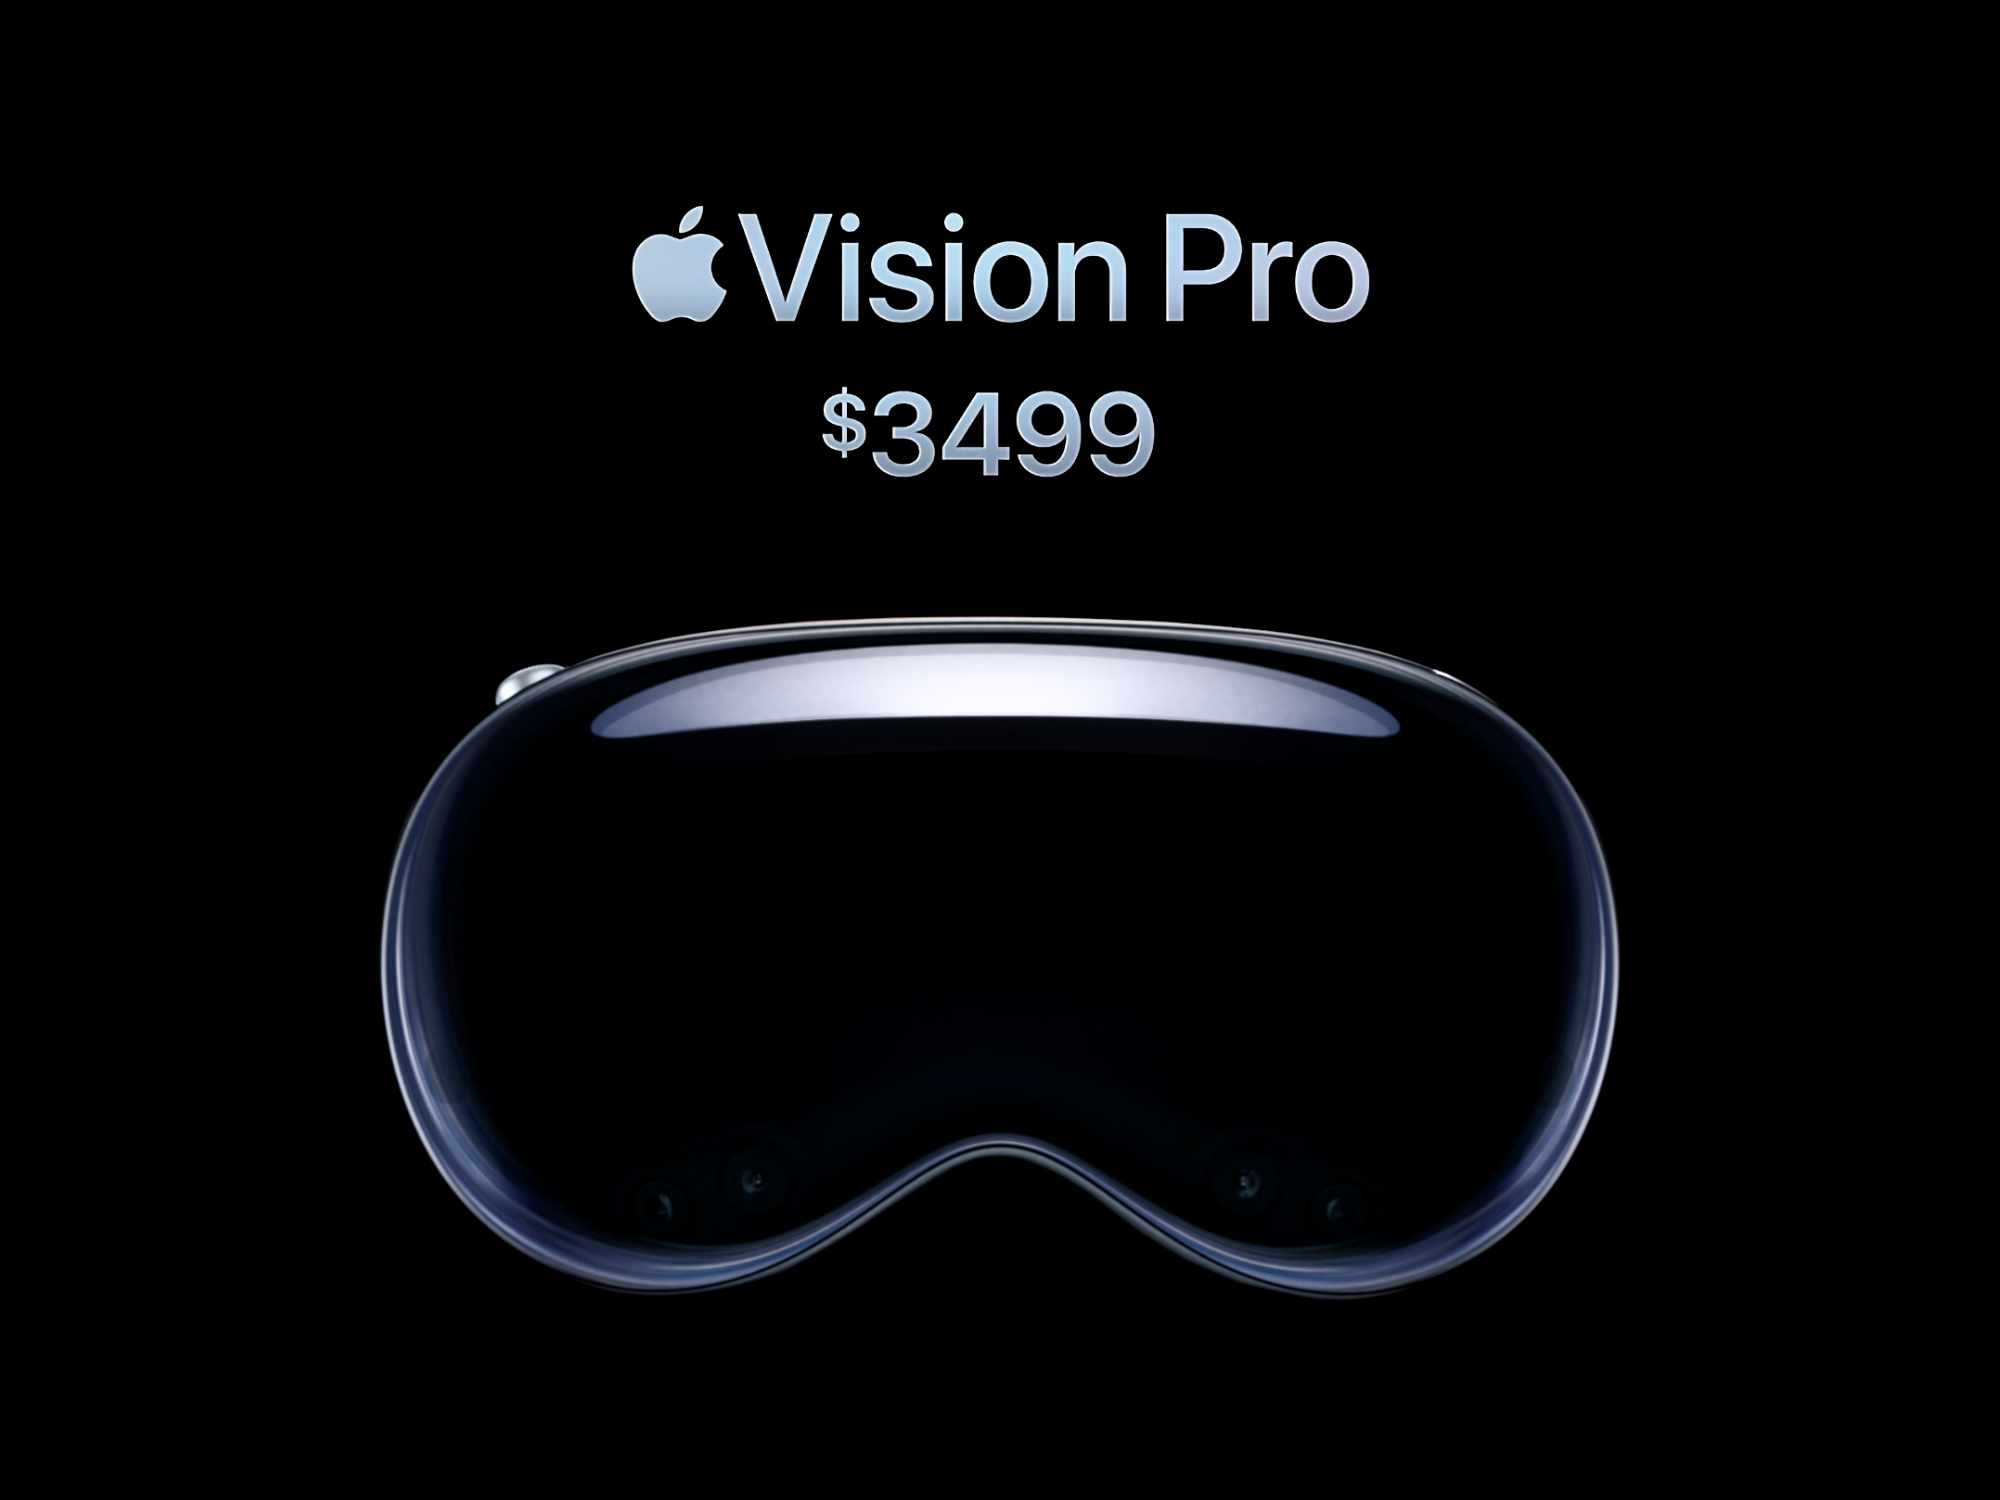  Vision Pro